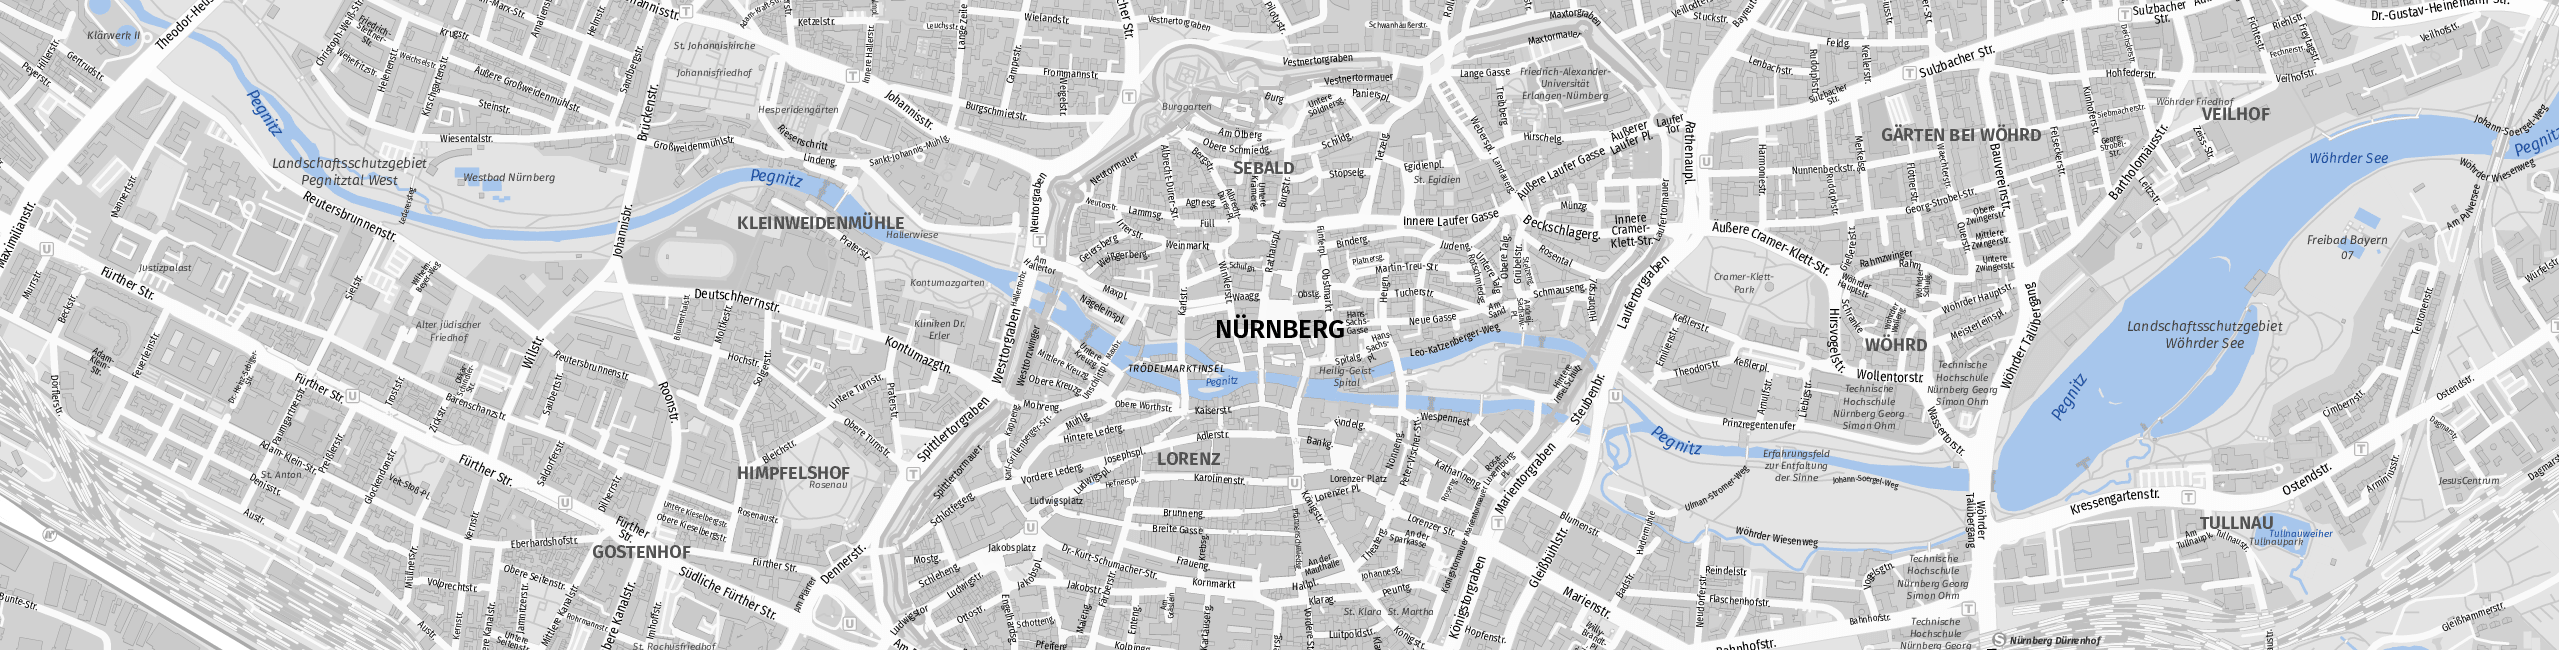 Stadtplan Nürnberg zum Downloaden.